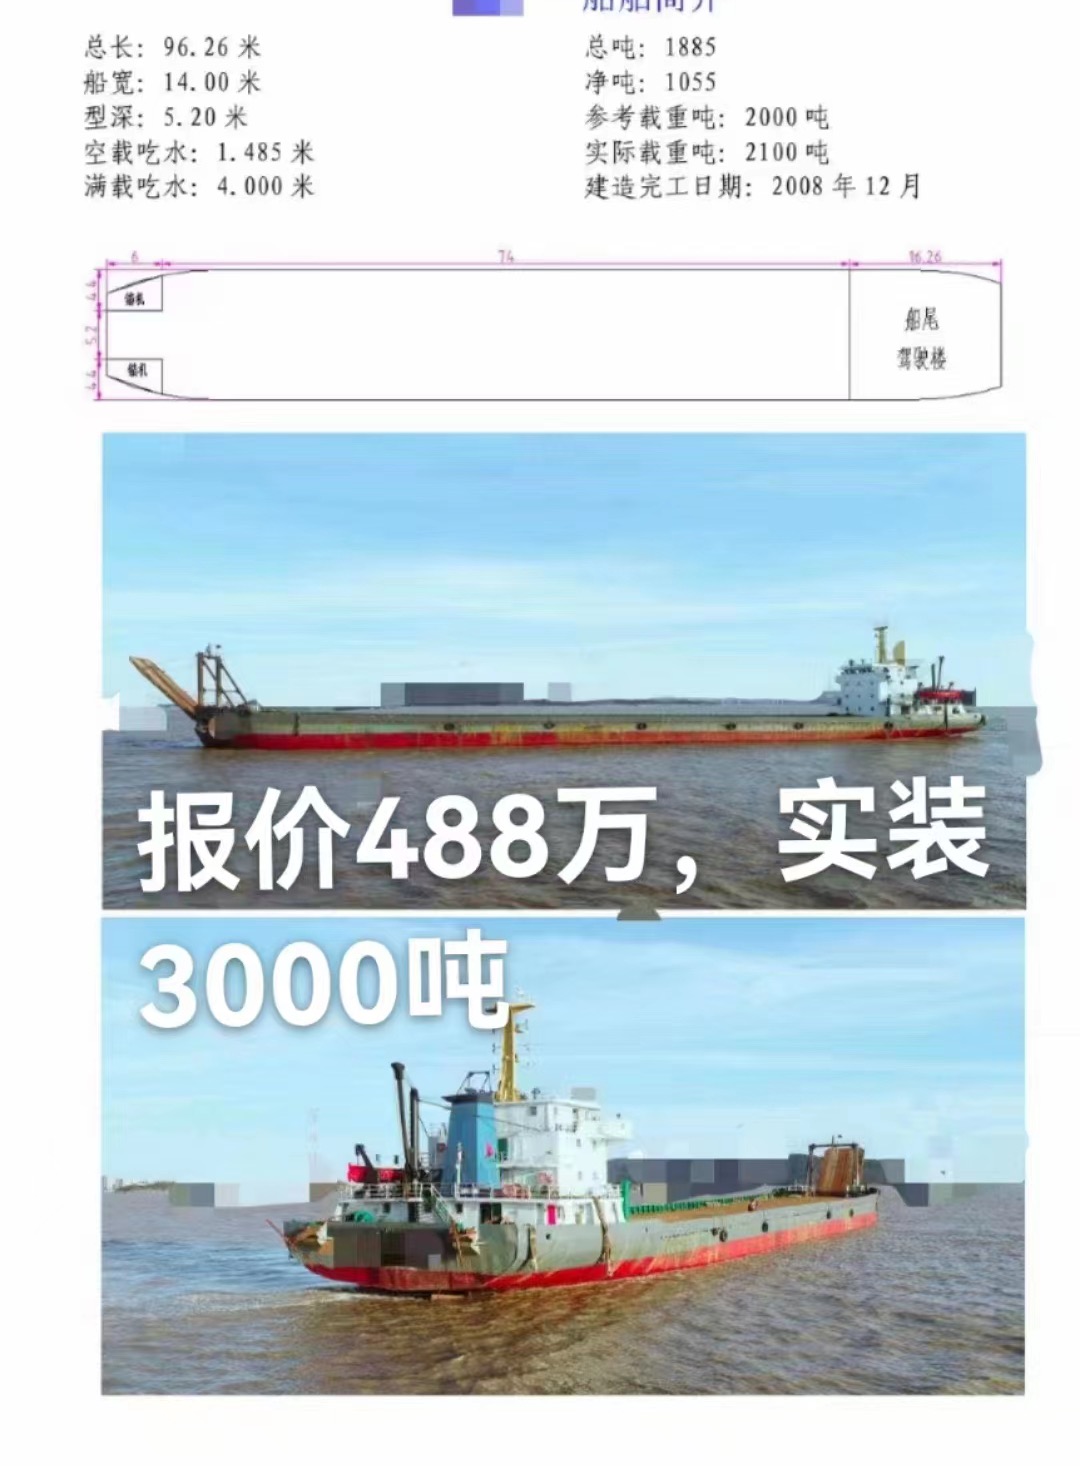 出售ccs自航驳船3000吨